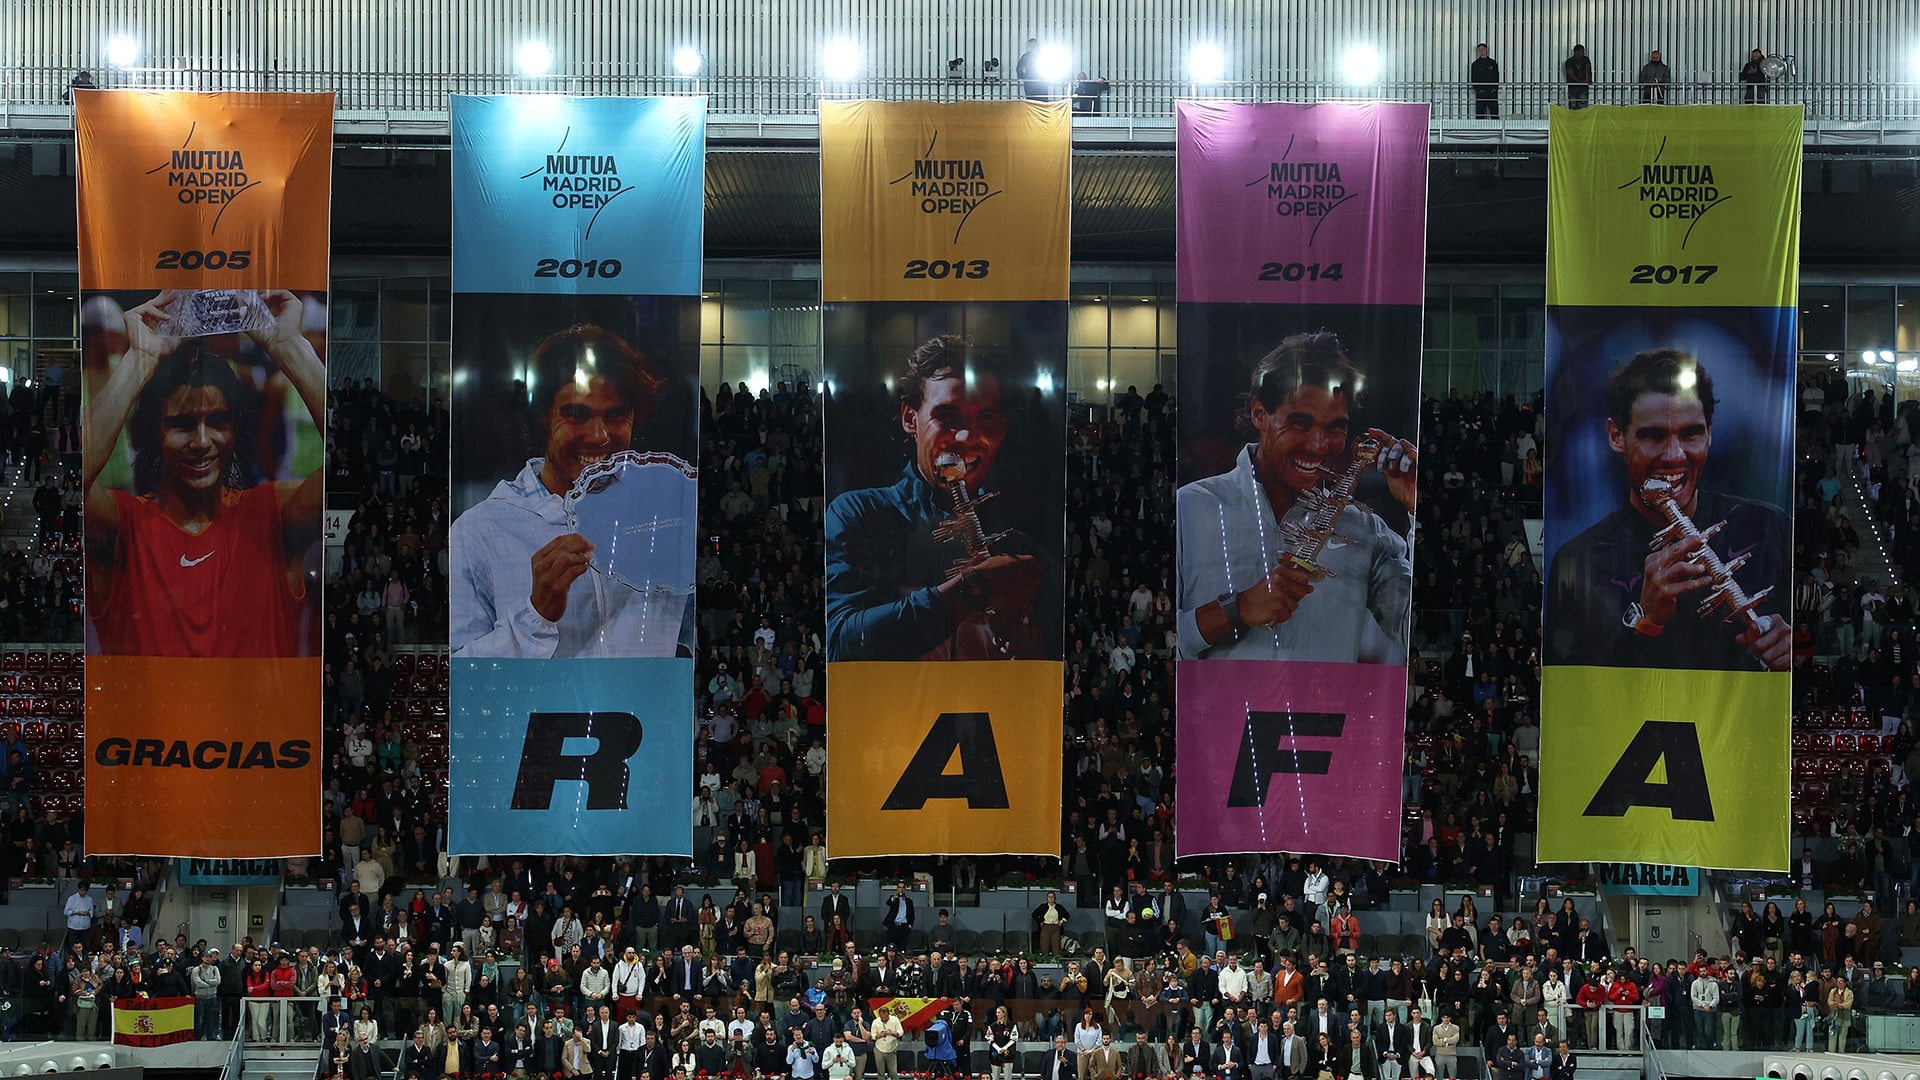 View - Nadal được Madrid Open tri ân theo cách đặc biệt | Báo Dân trí